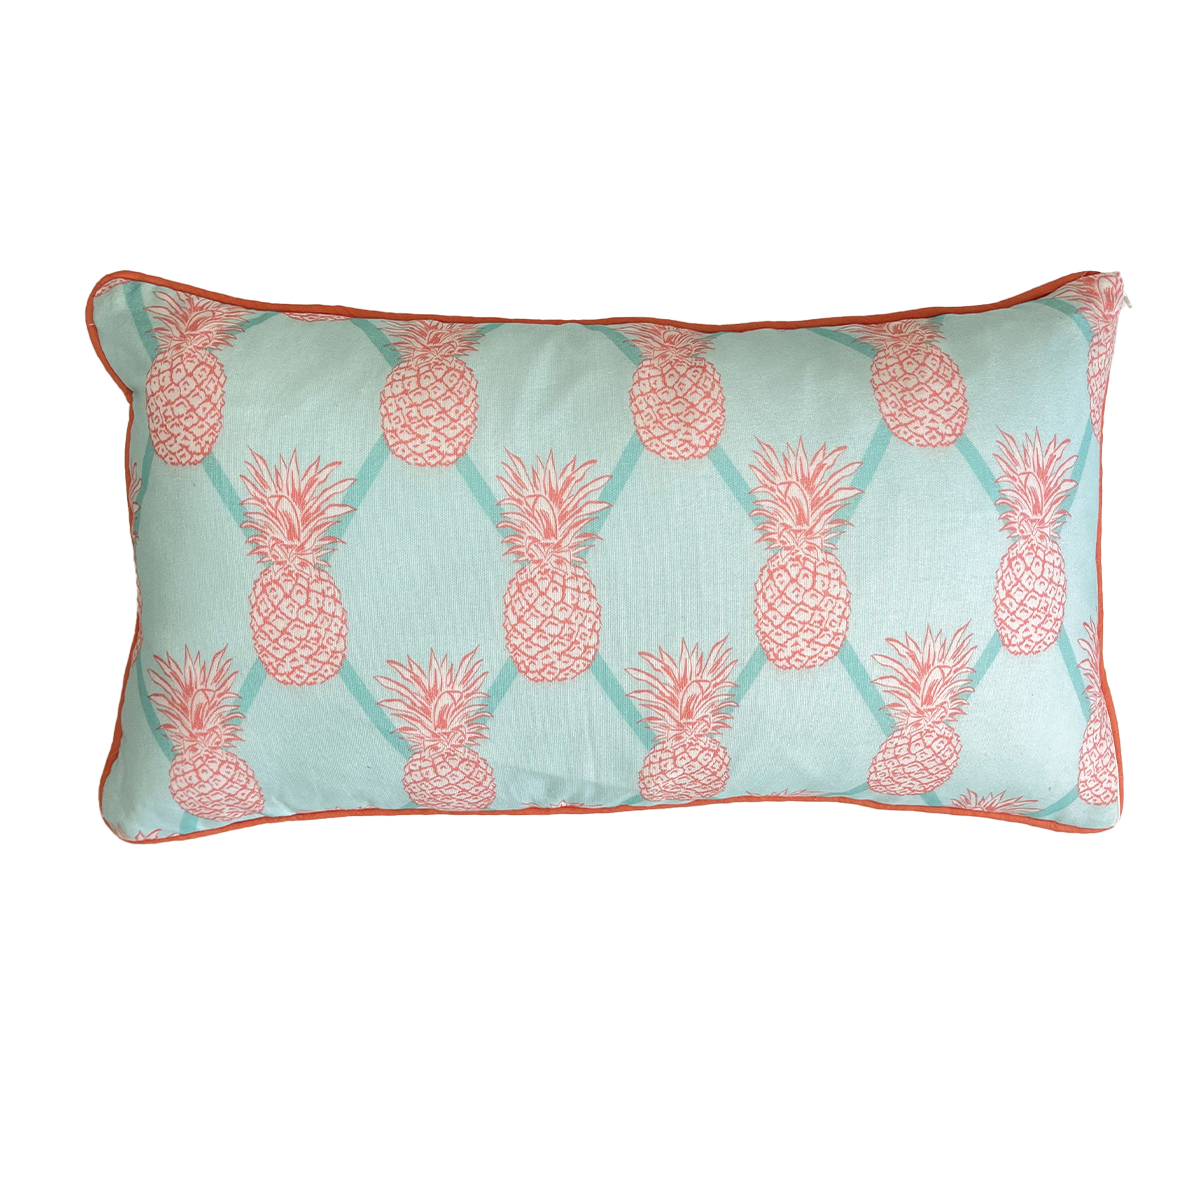 WHOLESALE: Sunset Bay Pineapple Lumbar Pillow Covers Bulk